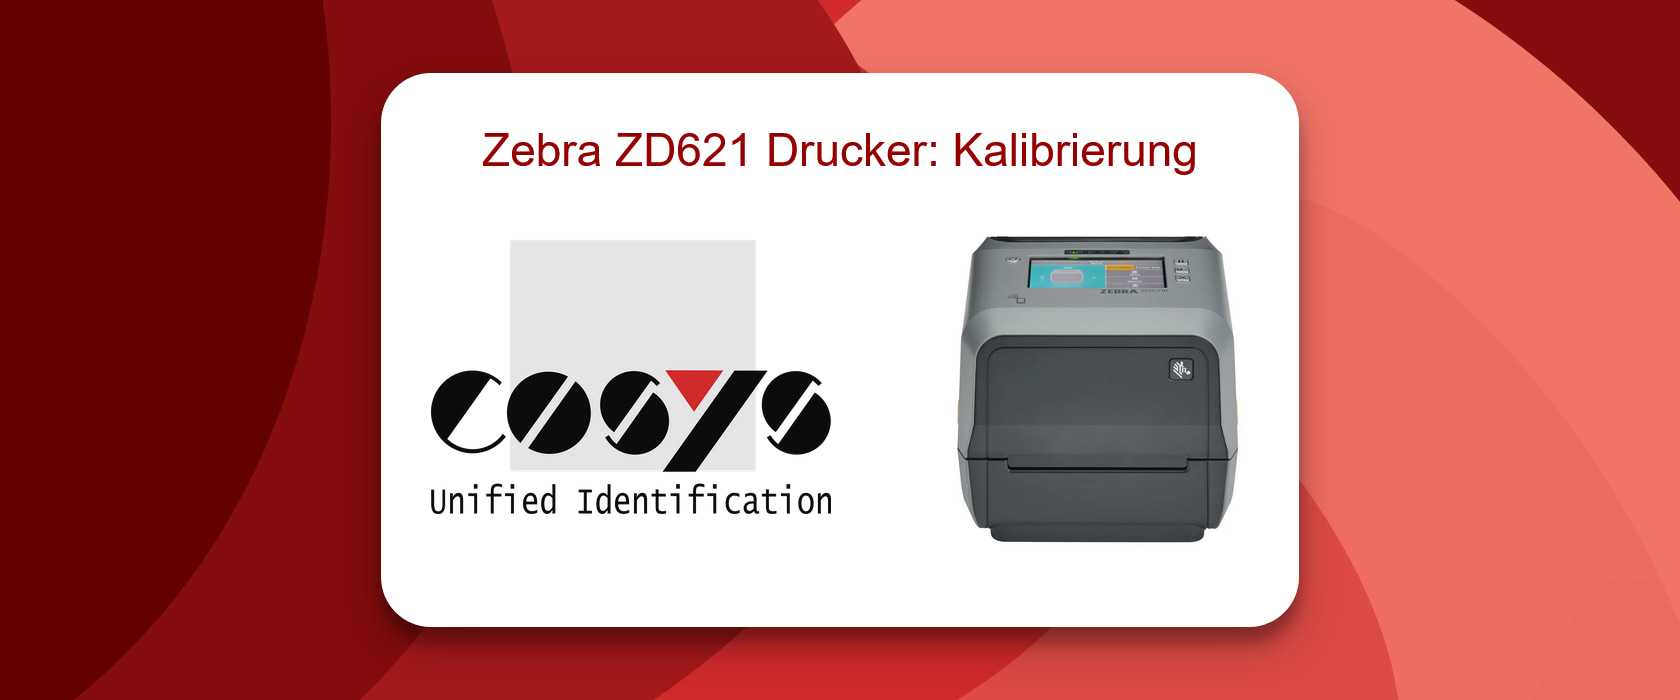 Kalibrierung des Zebra ZD621 Druckers